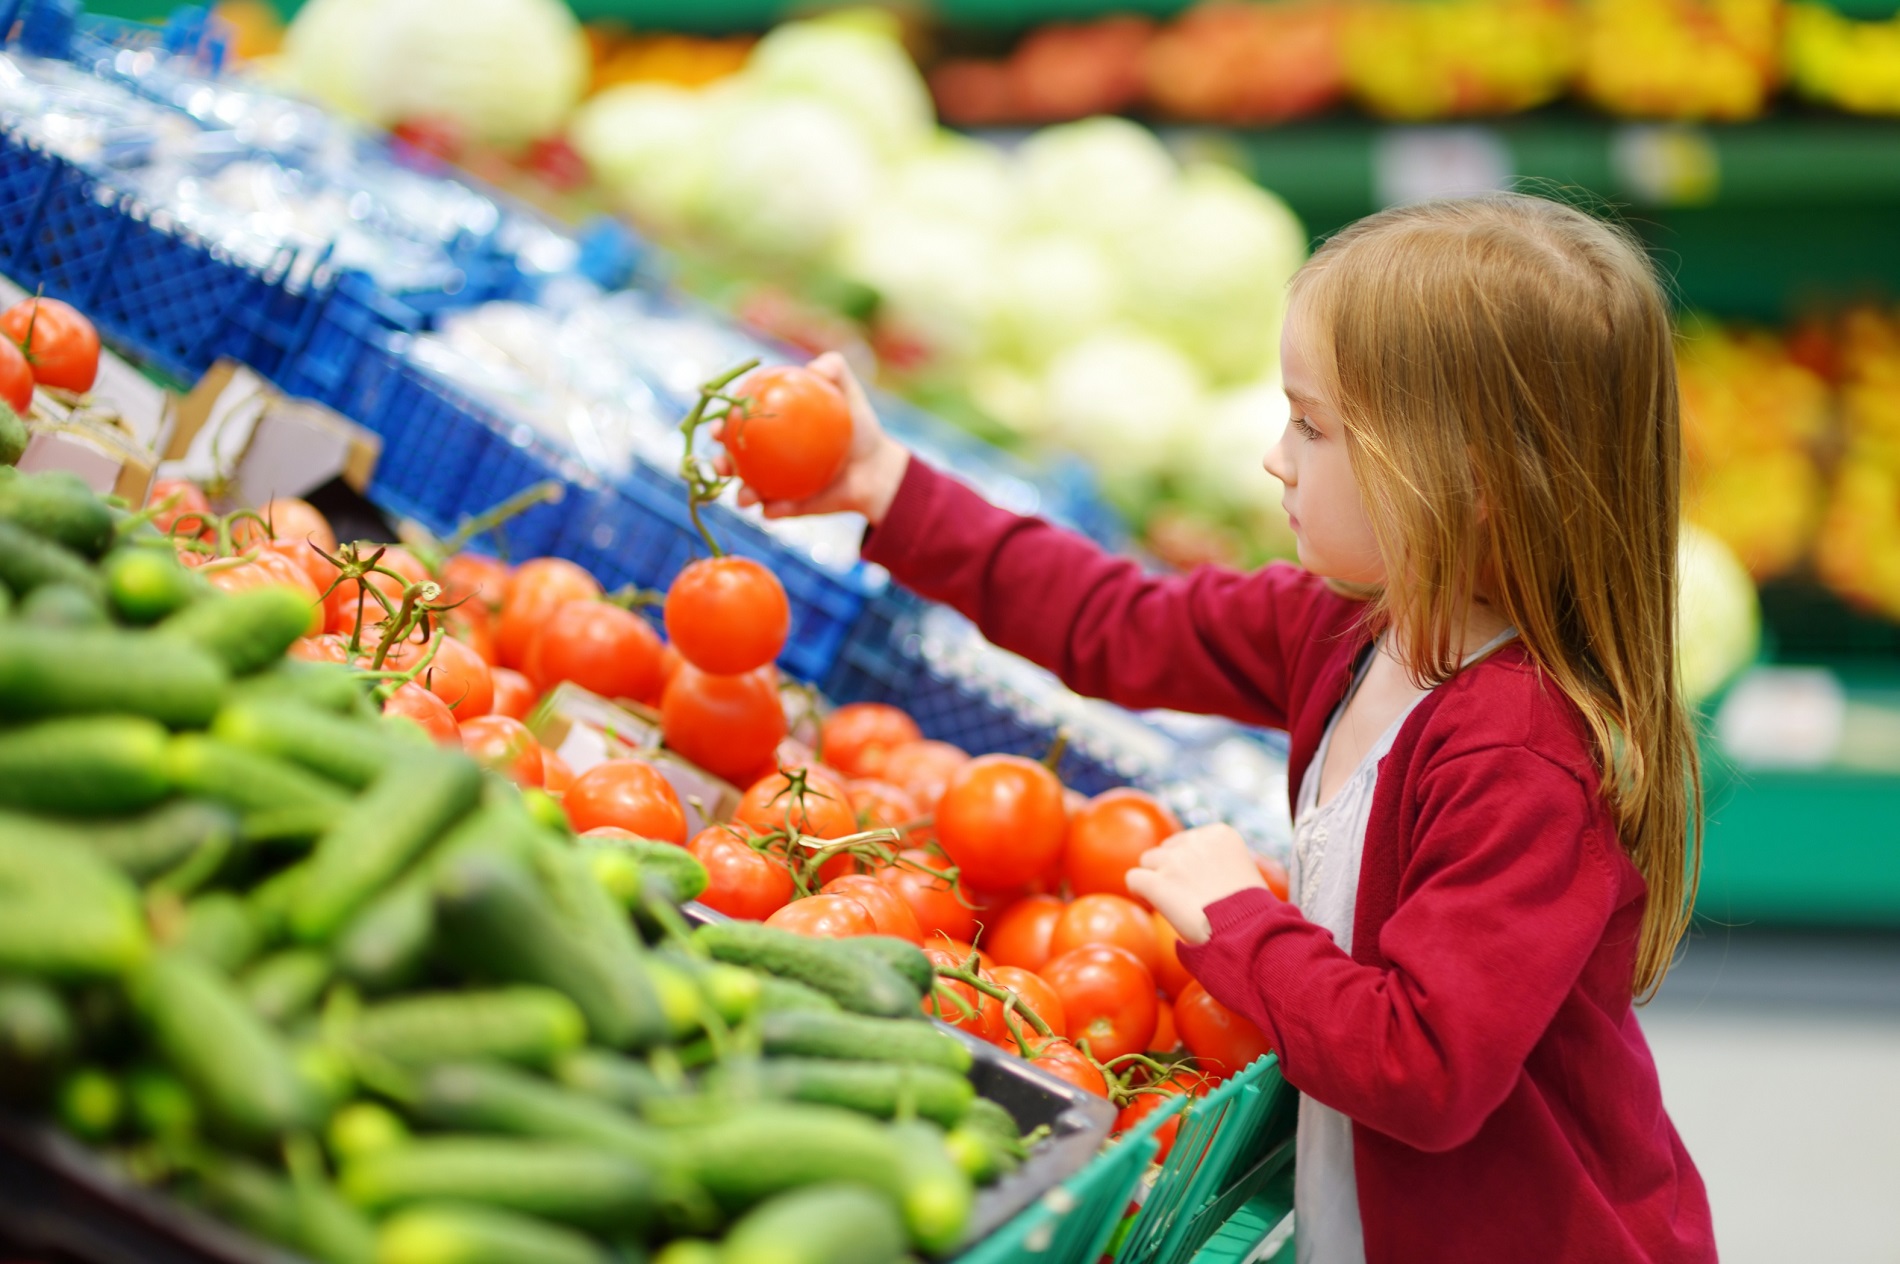 La sanidad vegetal como ejemplo de compromiso con la seguridad alimentaria